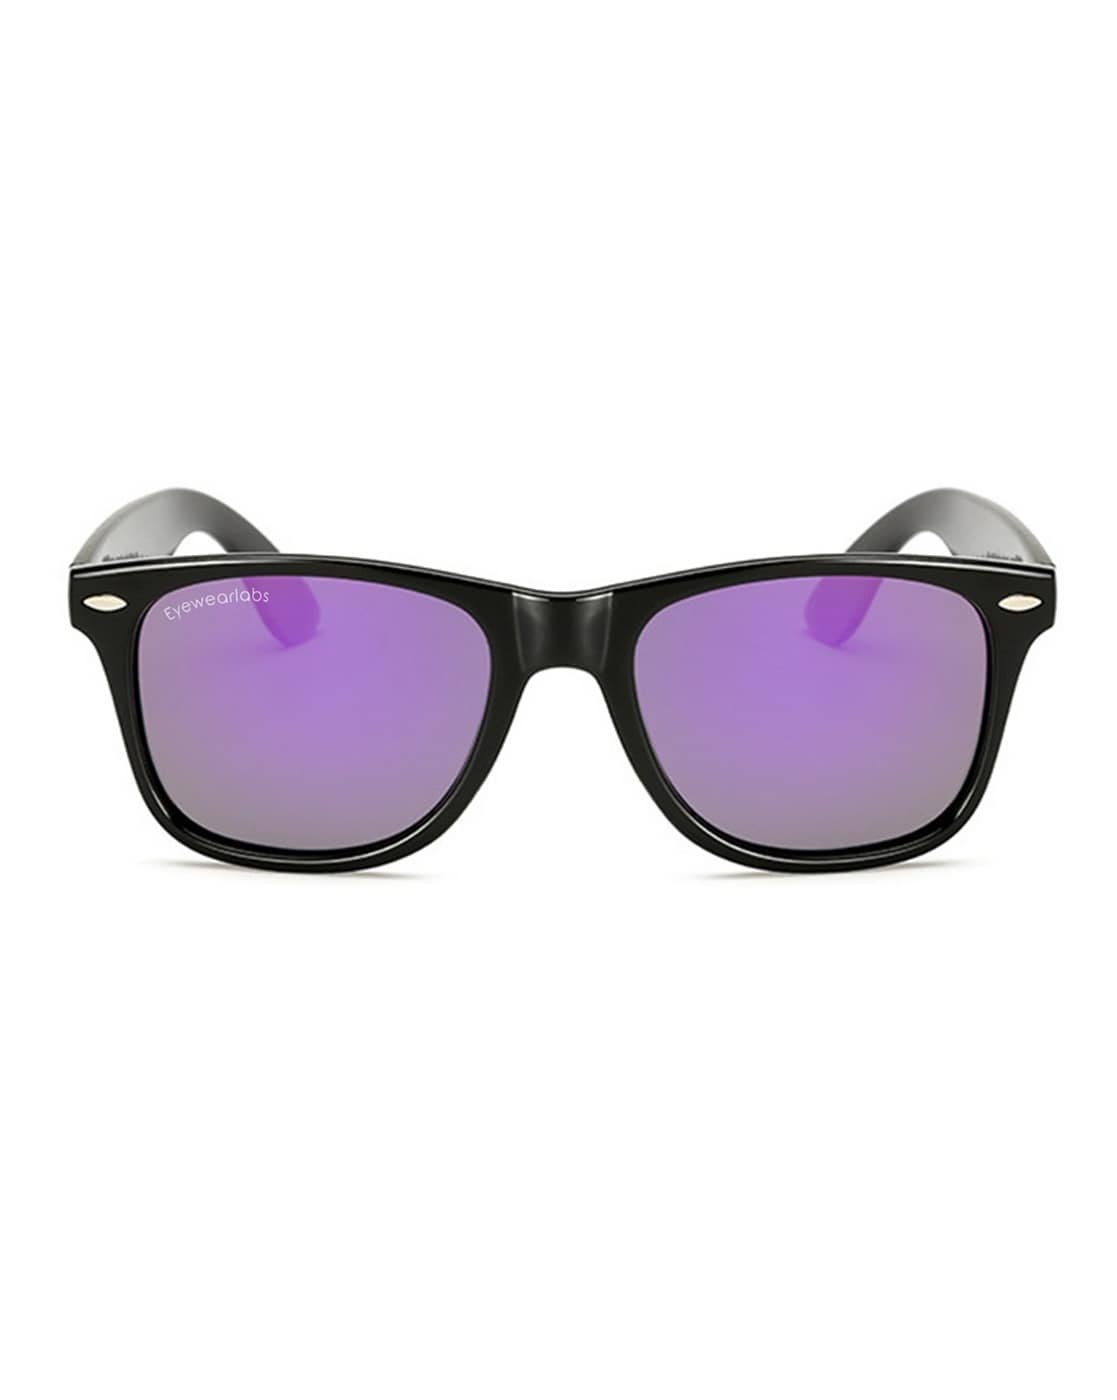 Sunglasses w/ Mint Logo (Purple Tint) – Mint Discs